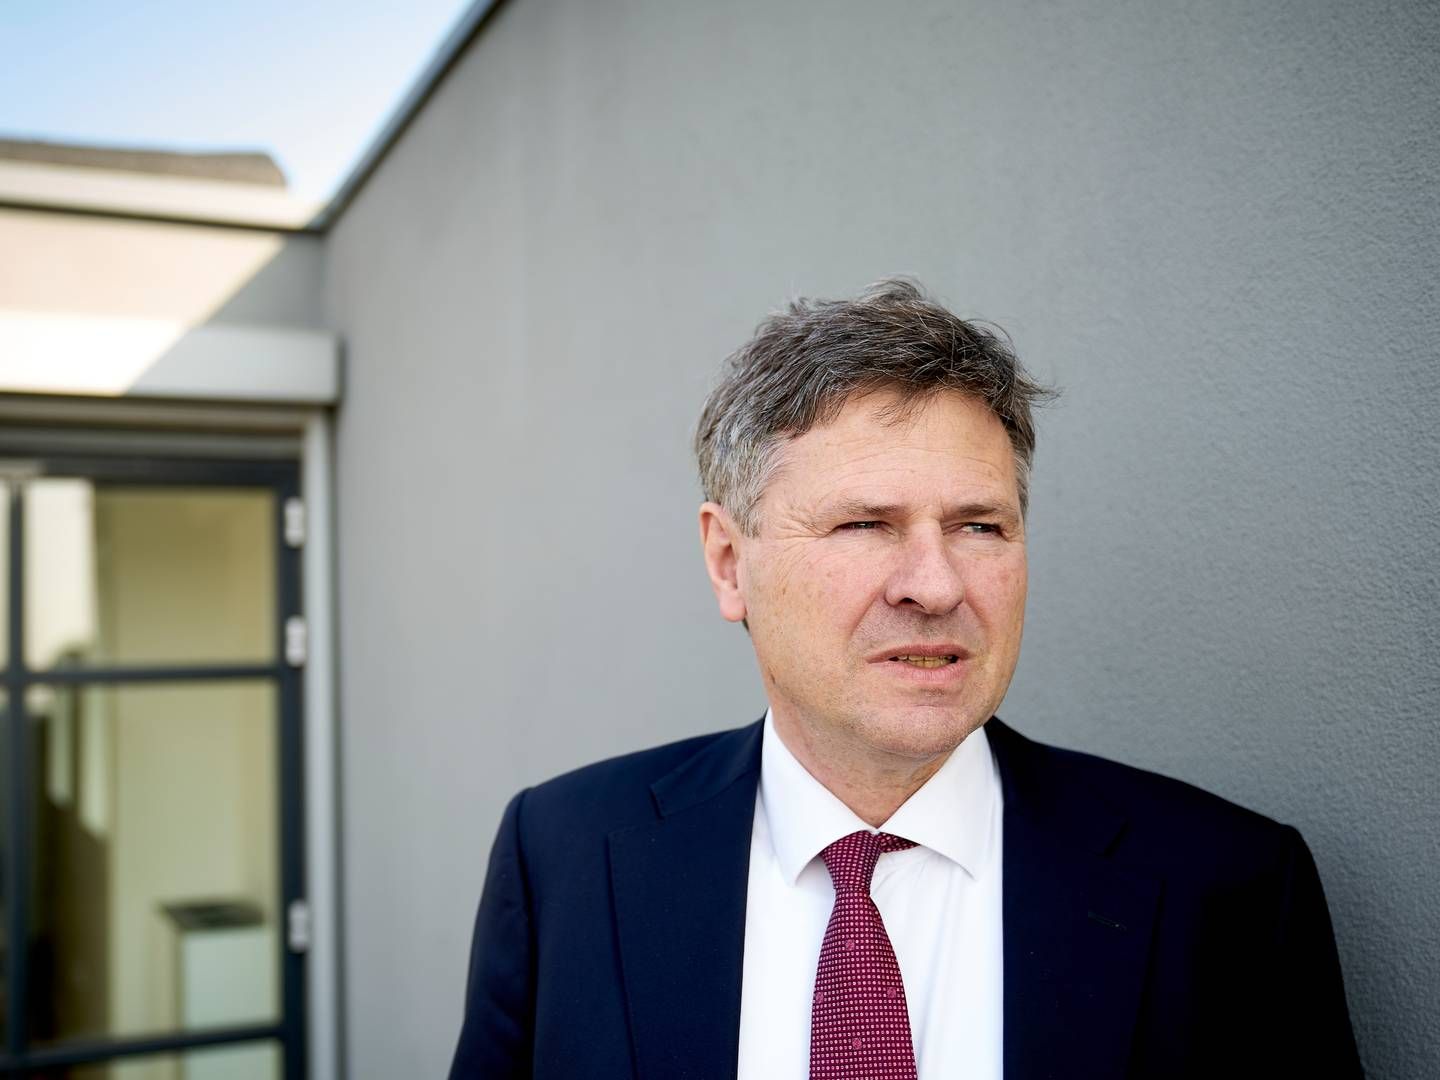 Jesper Berg stoppede i april som direktør i Finanstilsynet. Han har efterfølgende udtalt, at tiltale for vold mod en p-vagt var en medvirkende årsag til at stoppe. | Foto: Niels Ahlmann Olesen